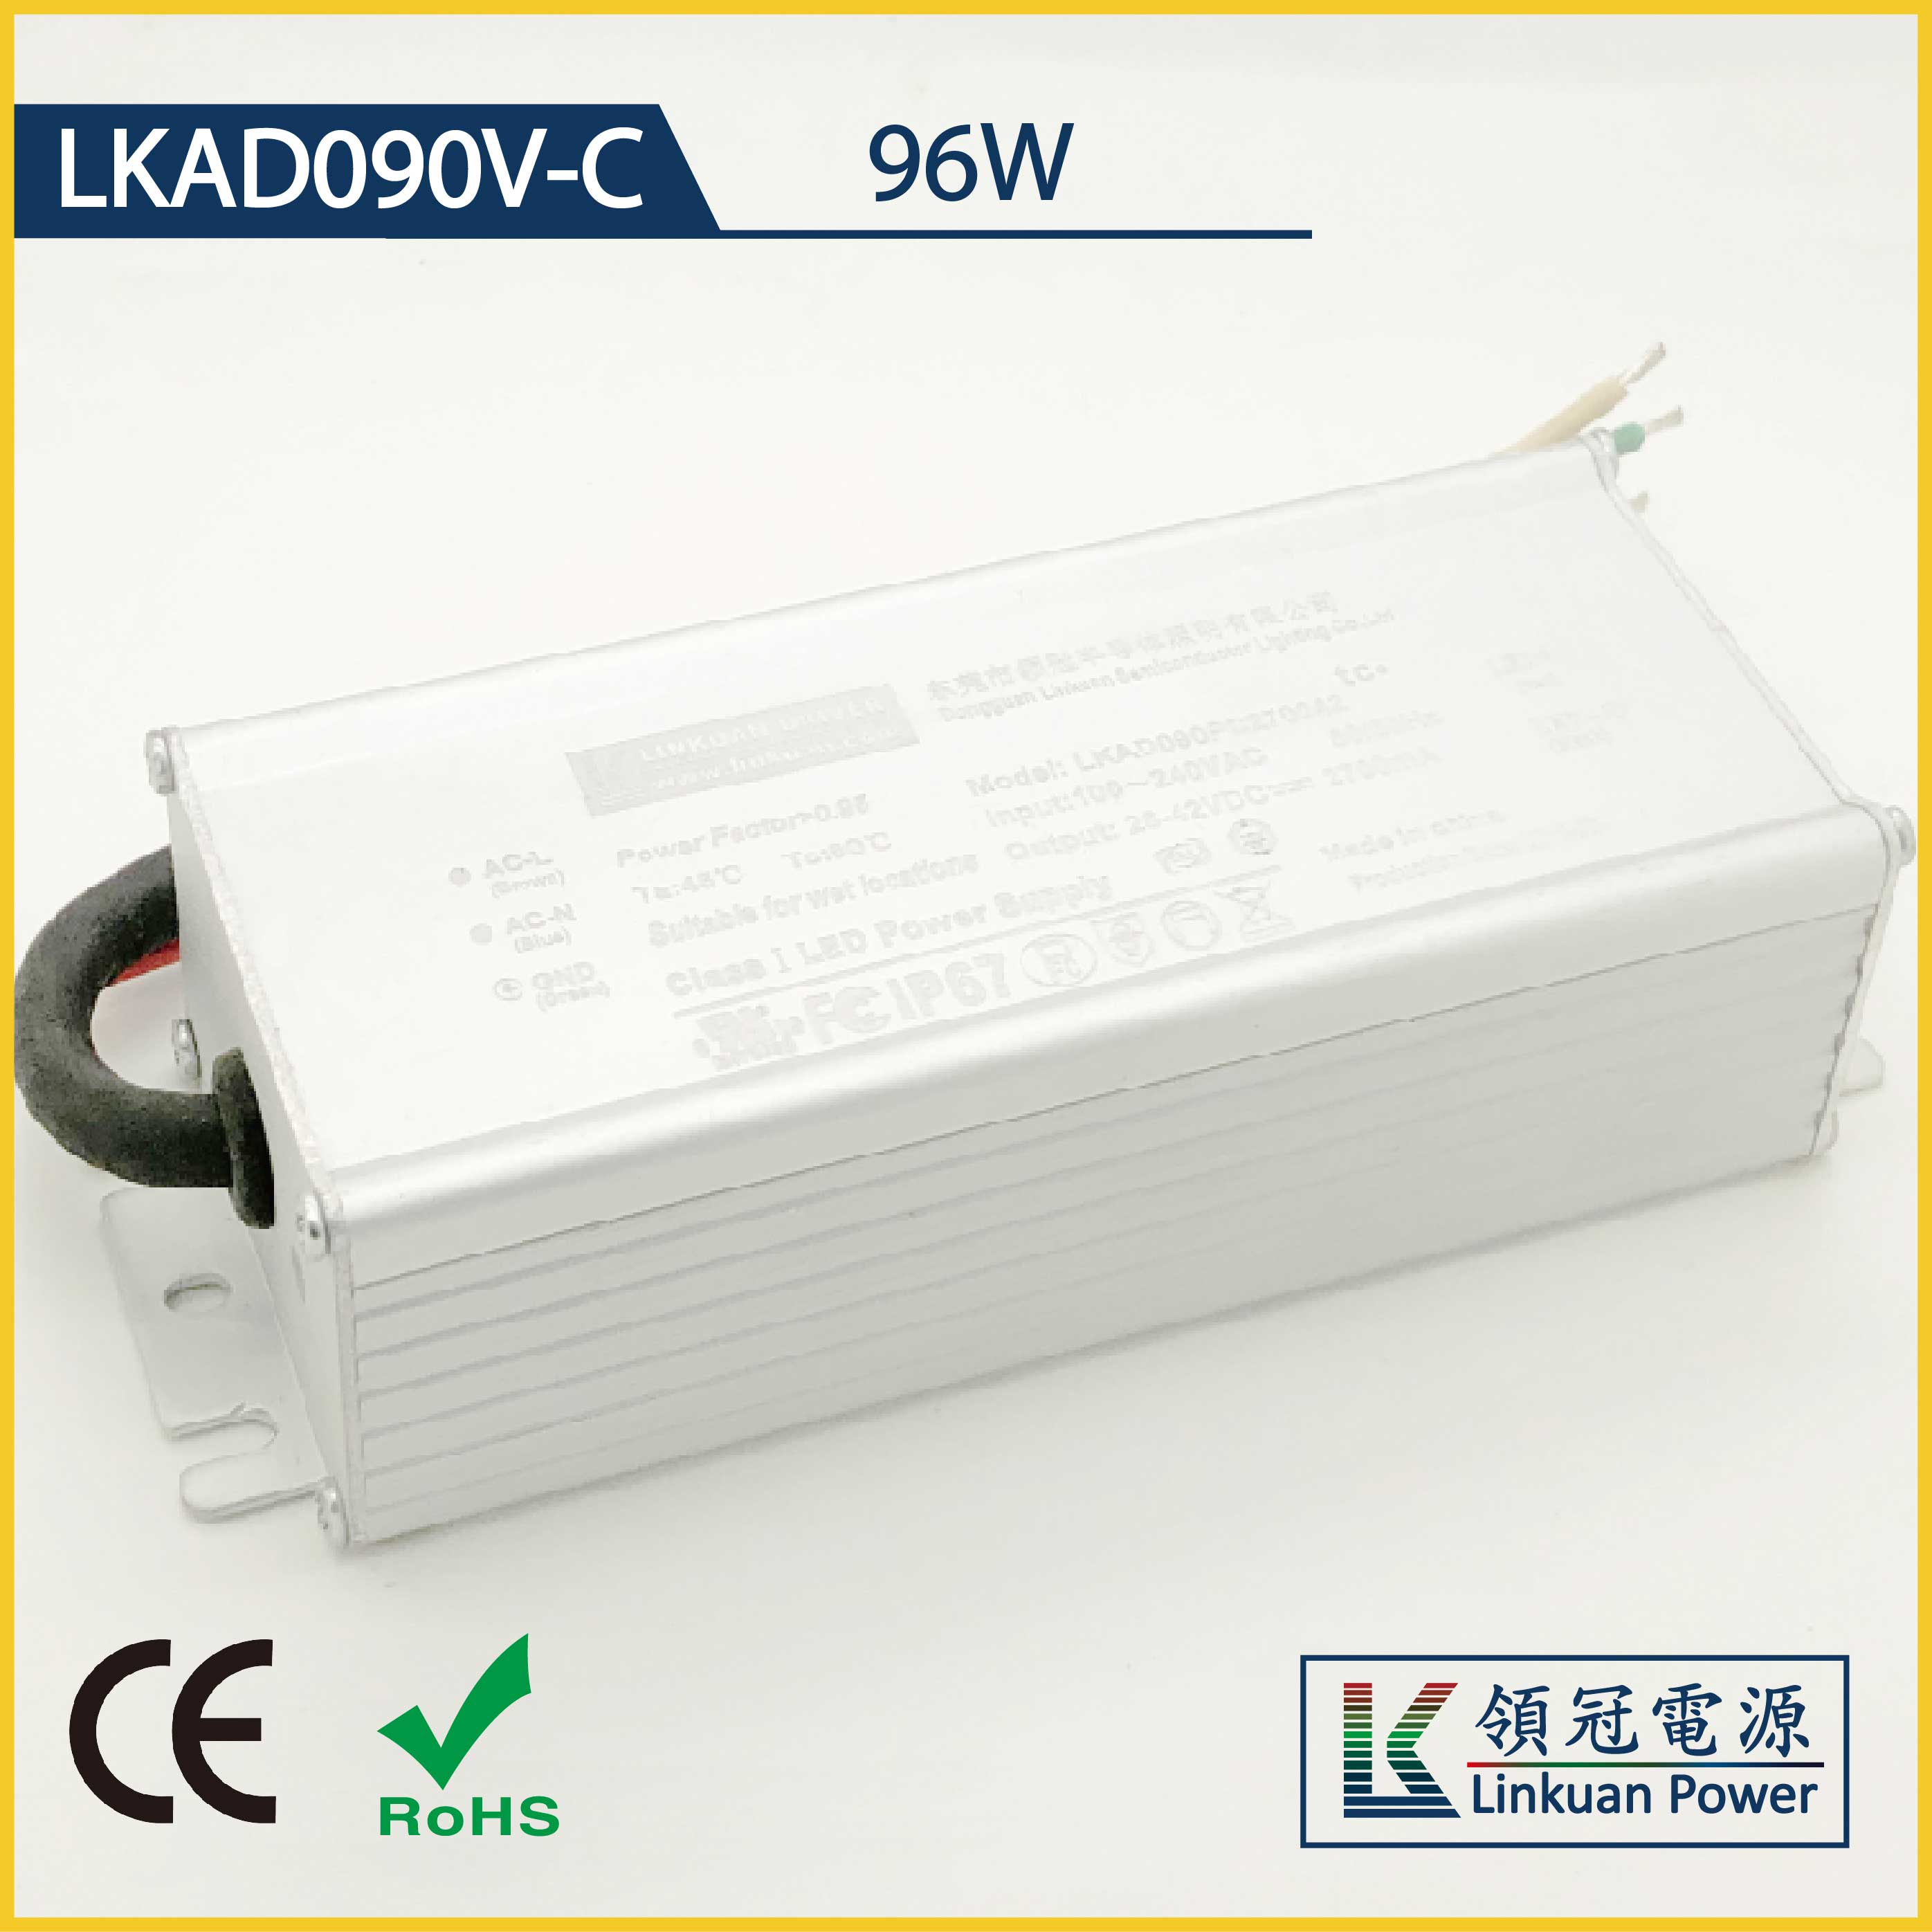 LKAD090V-C 96W 12/24V 8000/4500mA 0-10V Dimming LED drivers